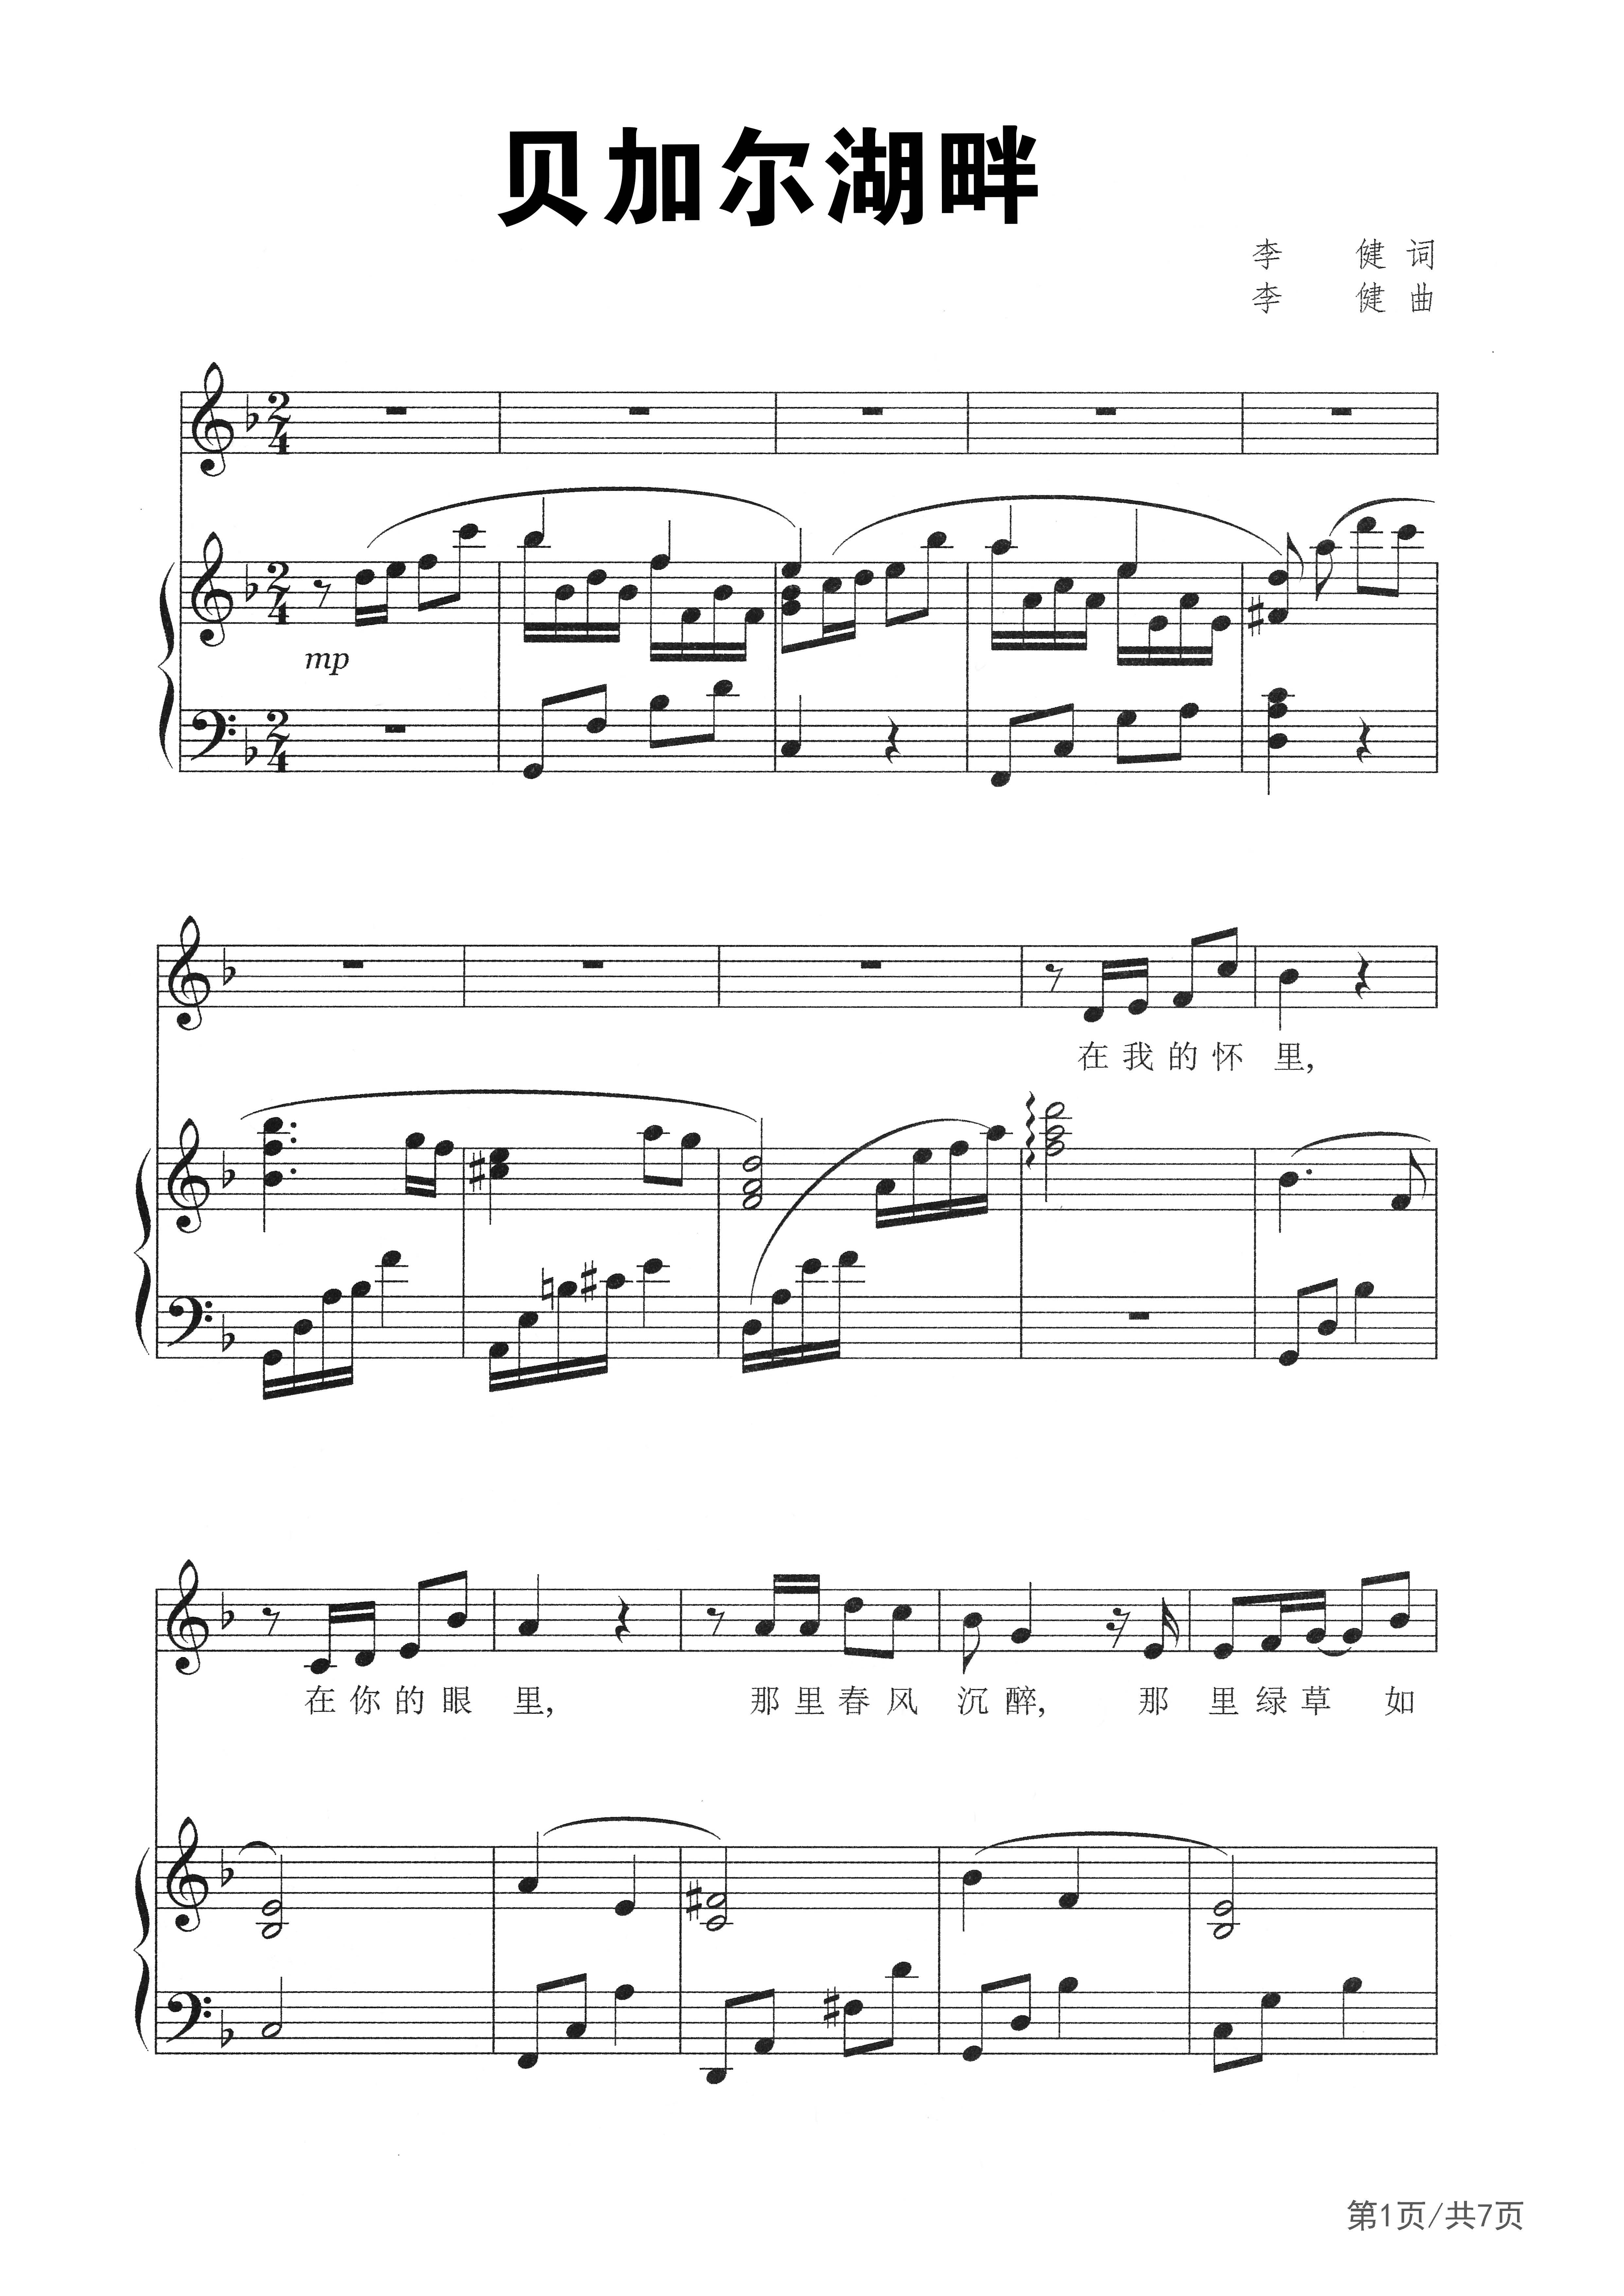 贝加尔湖畔-李健双手简谱预览3-钢琴谱文件（五线谱、双手简谱、数字谱、Midi、PDF）免费下载